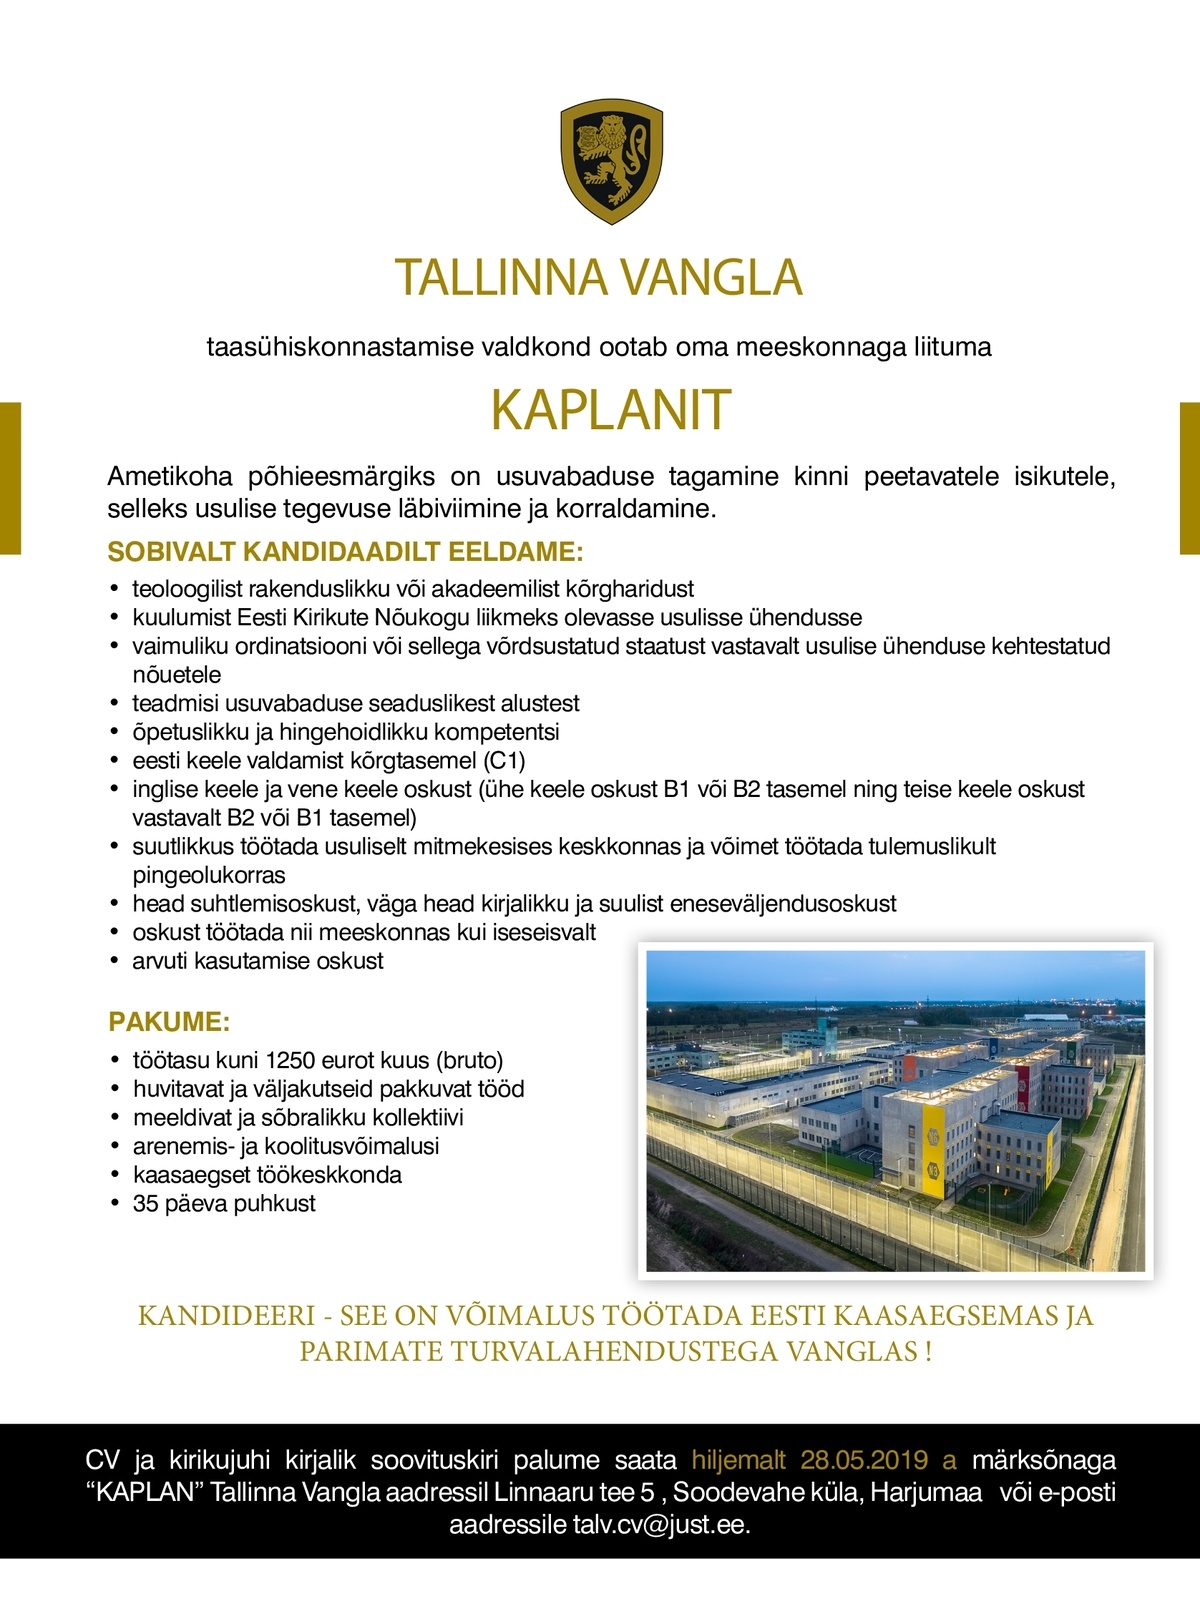 Tallinna Vangla Kaplan